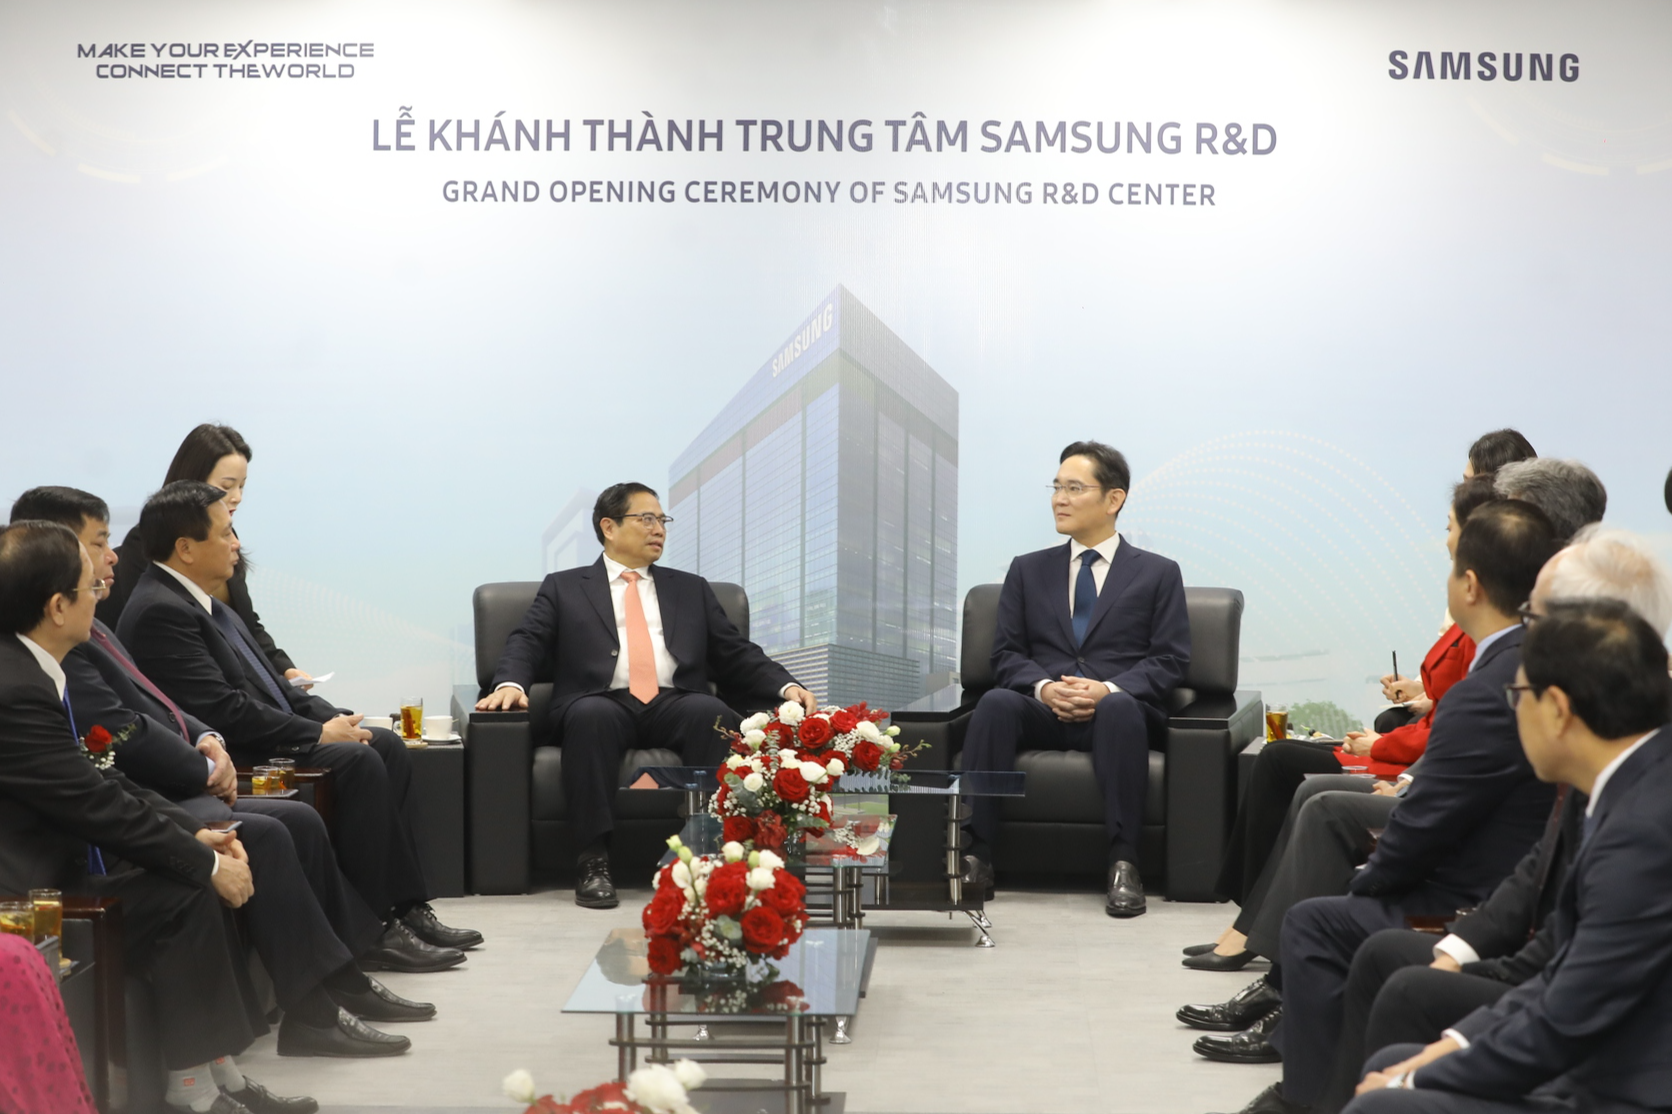 Hoàn thành lời hứa với Chính phủ Việt Nam, Samsung ra mắt Trung tâm R&D lớn nhất Đông Nam Á tại Hà Nội - Ảnh 3.